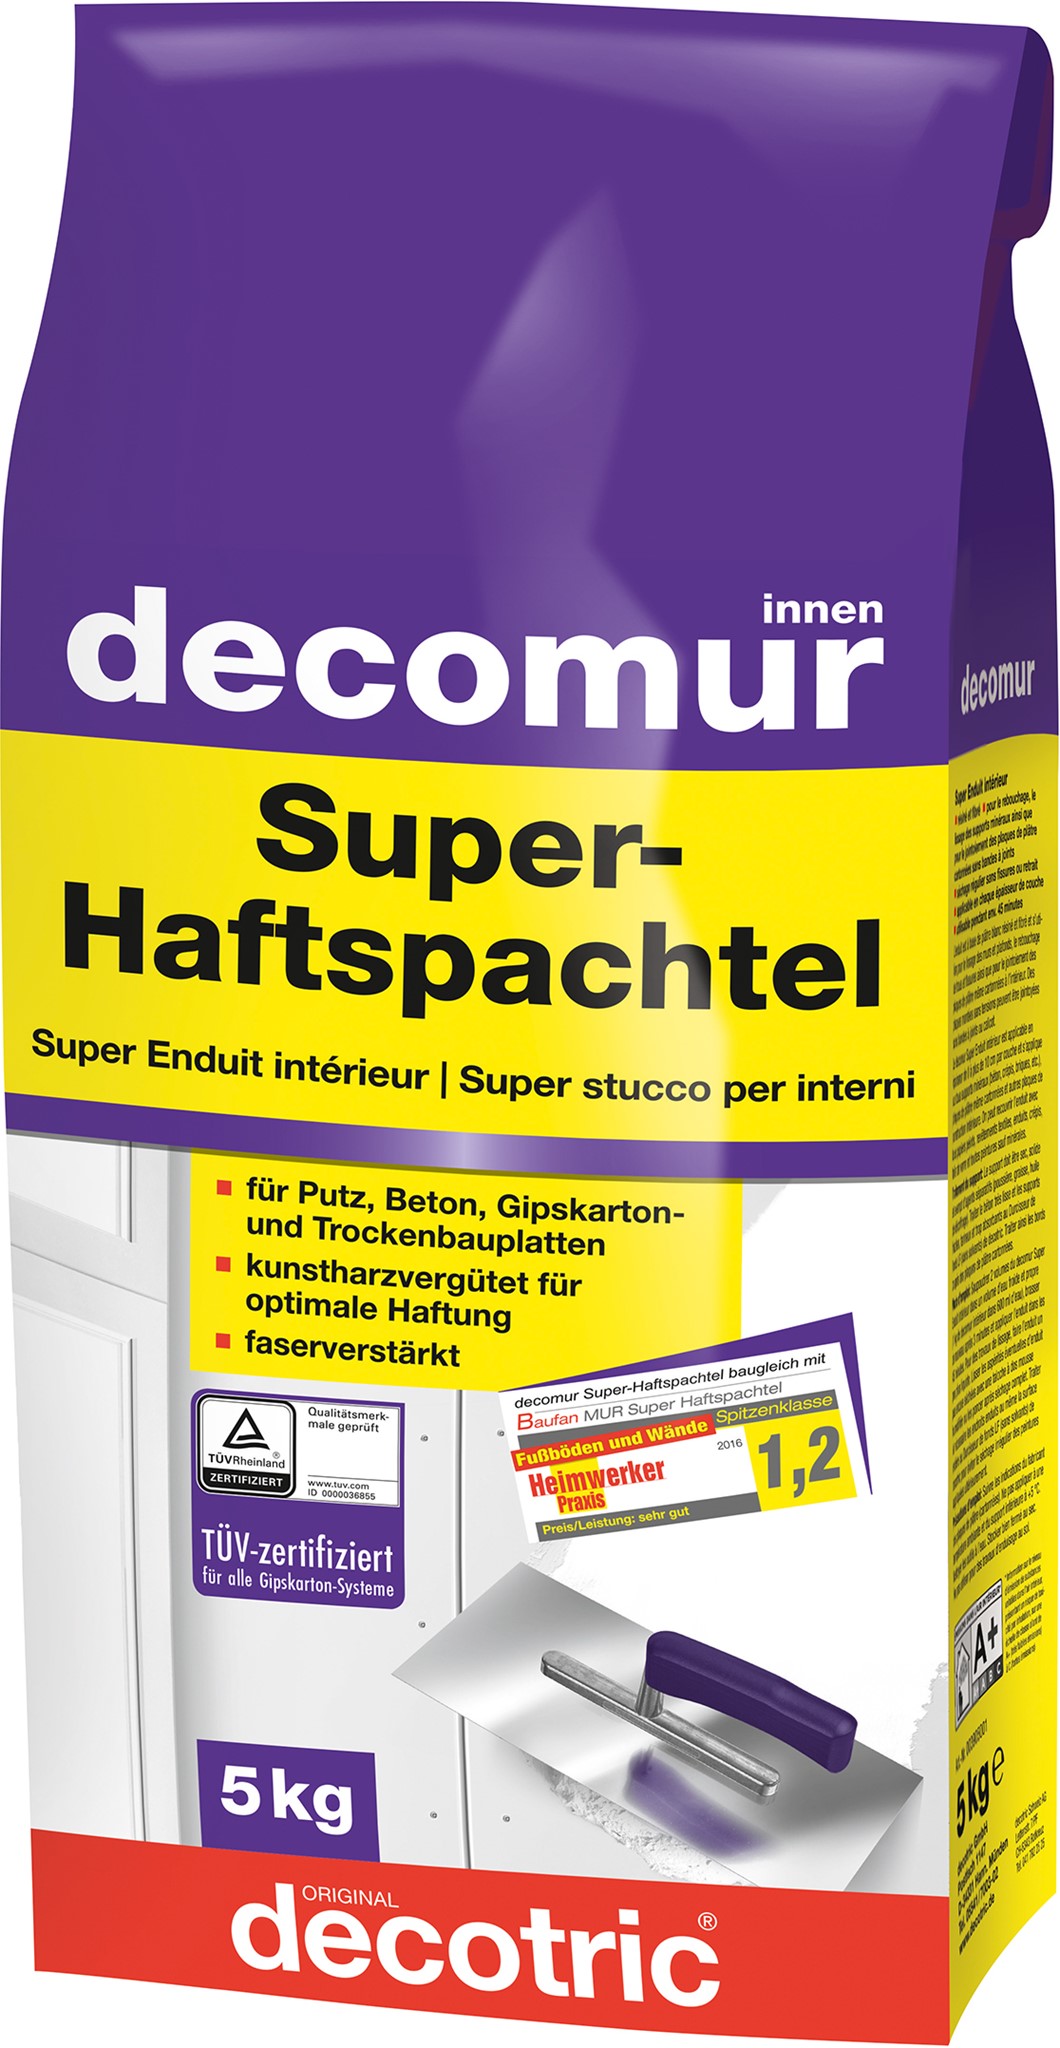 Picture for category decomur Super Haftspachtel